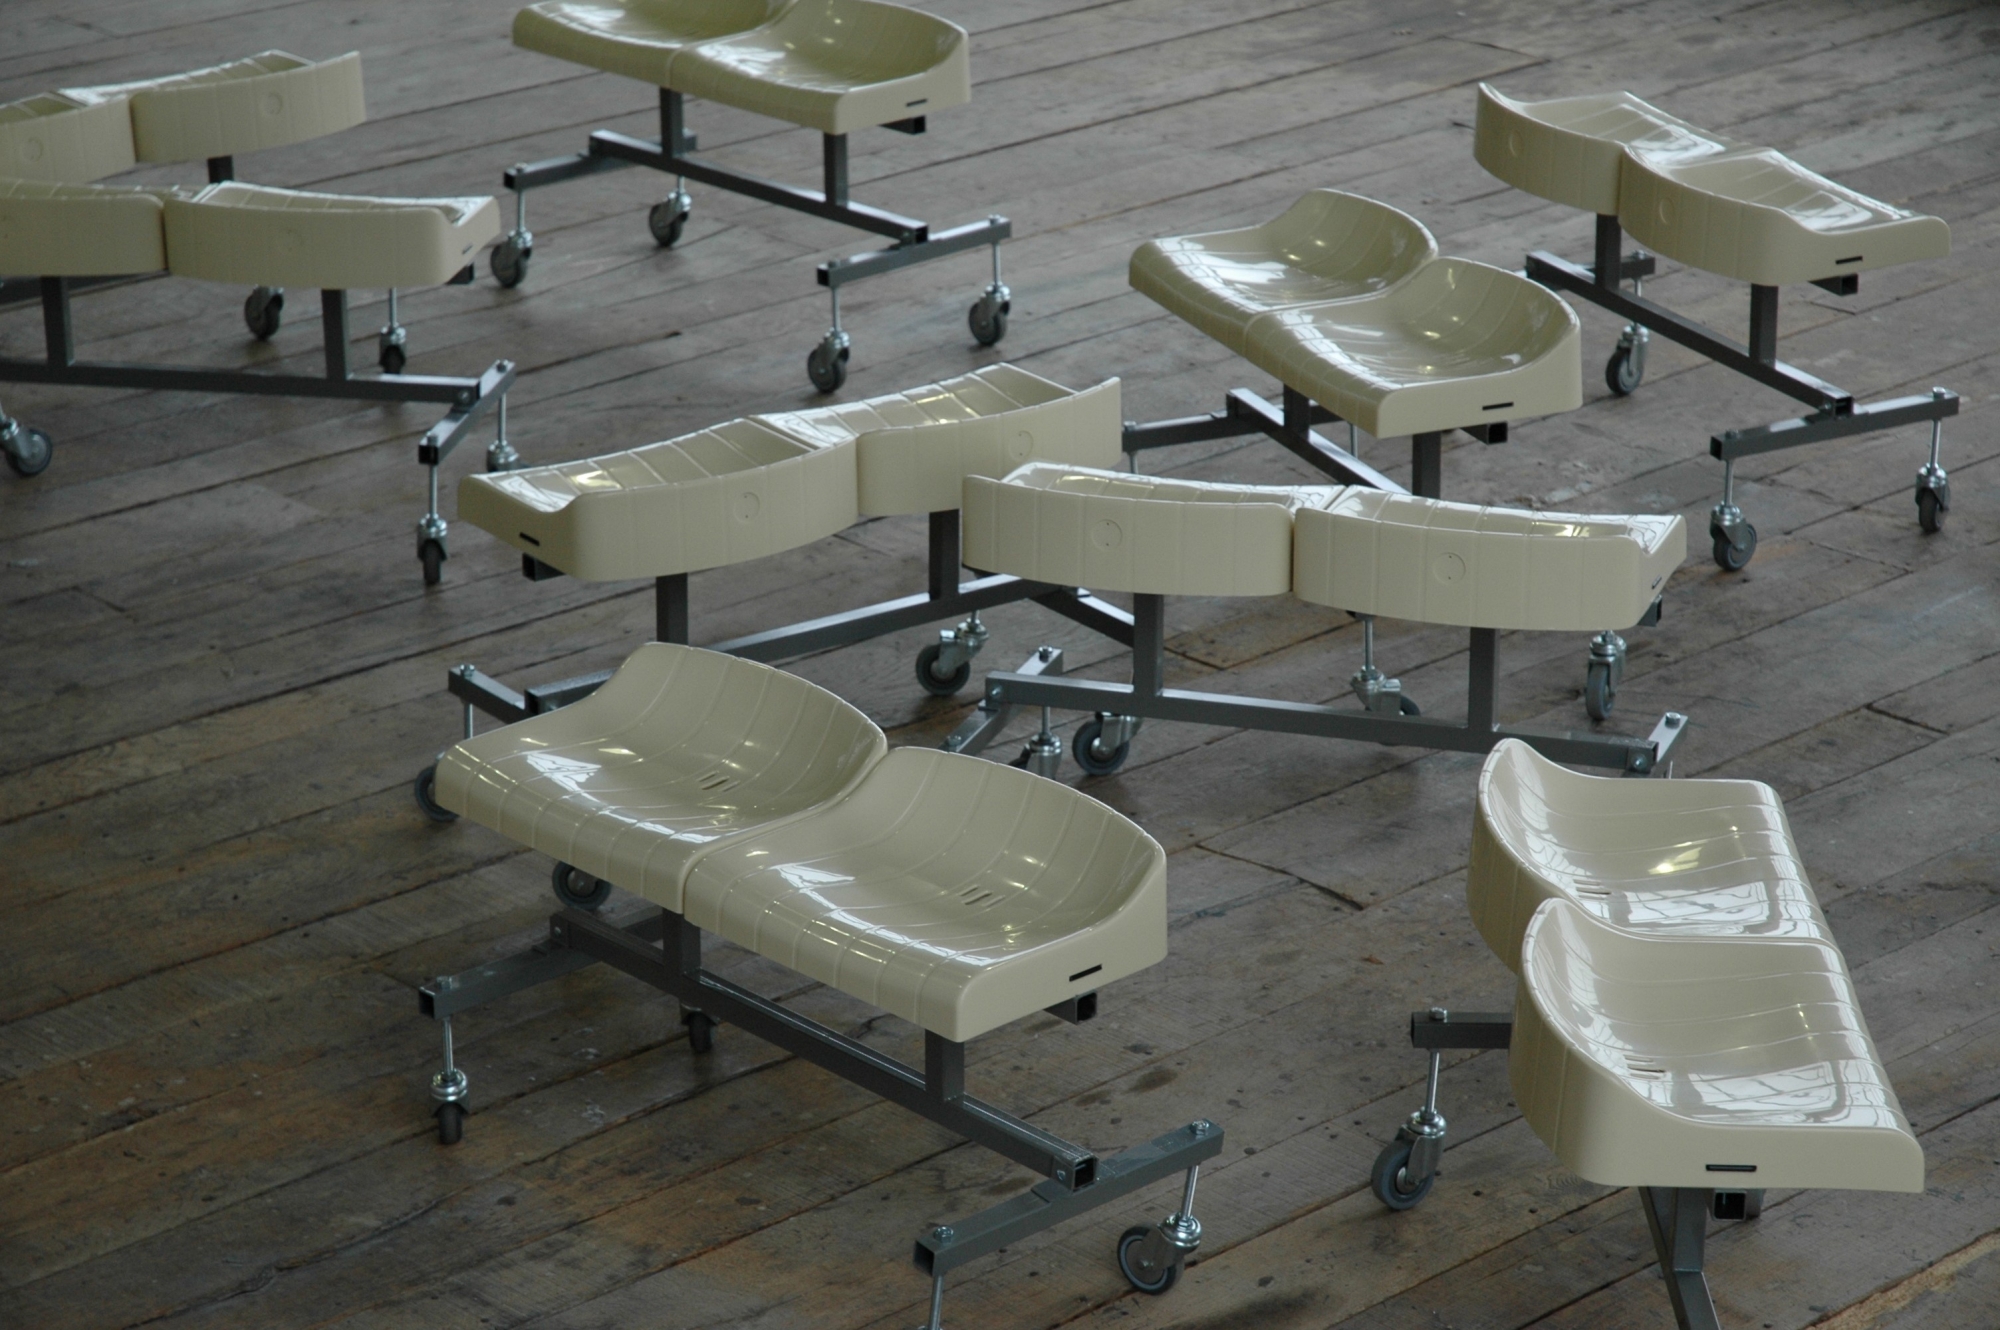 Les nouvelles assises, 2004, de Veit Stratmann 